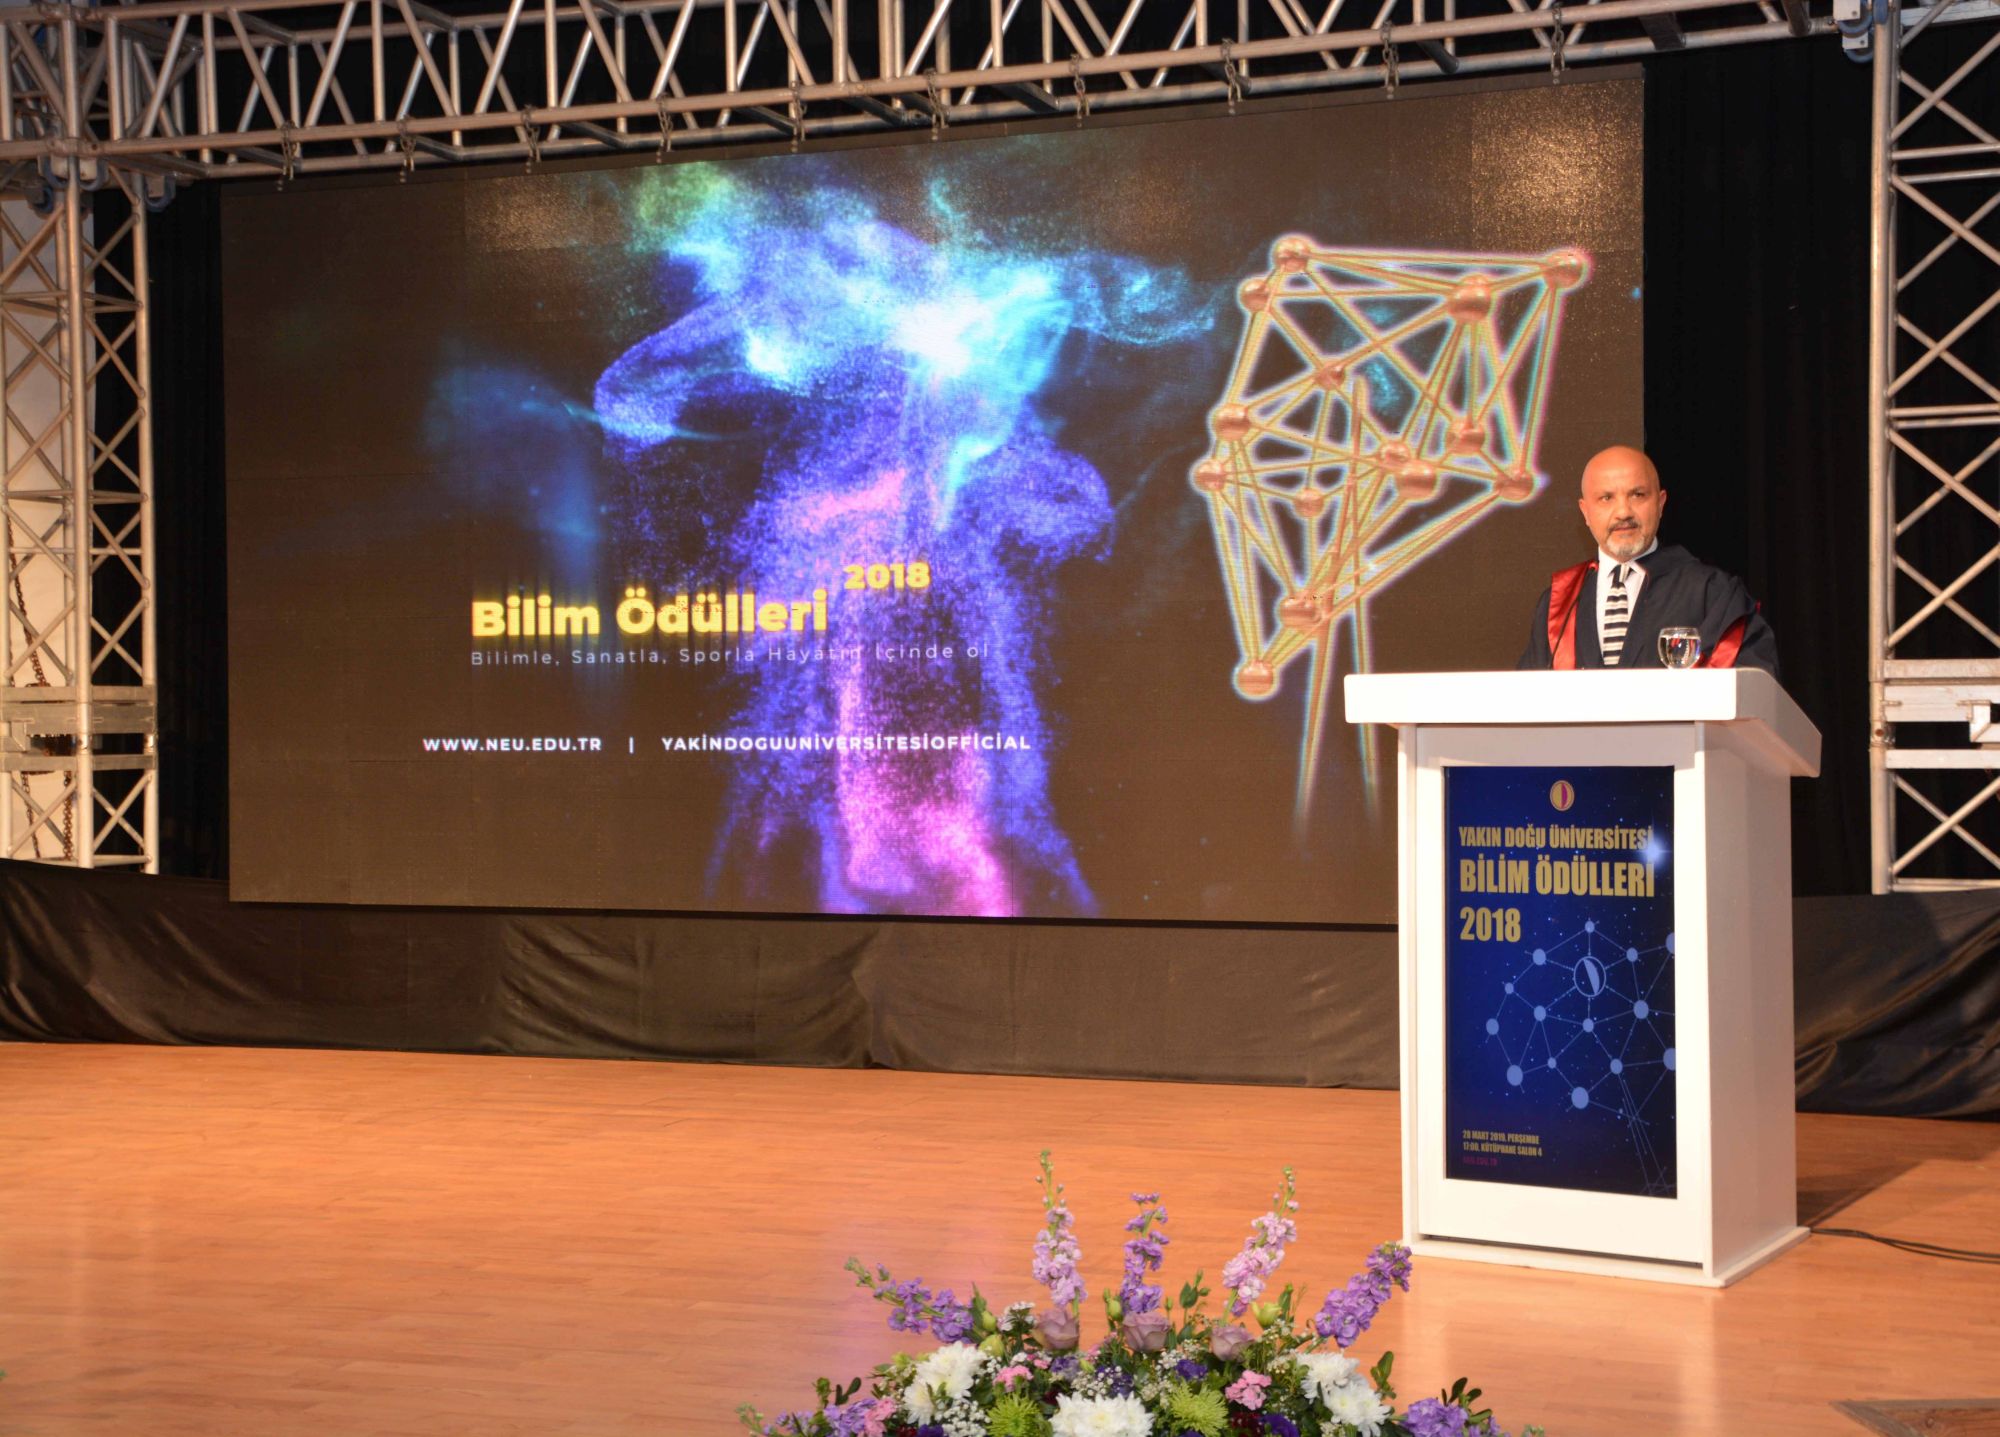 Yakın Doğu Üniversitesi “Bilim Ödülleri 2018” Görkemli Bir Törenle Gerçekleştirildi…